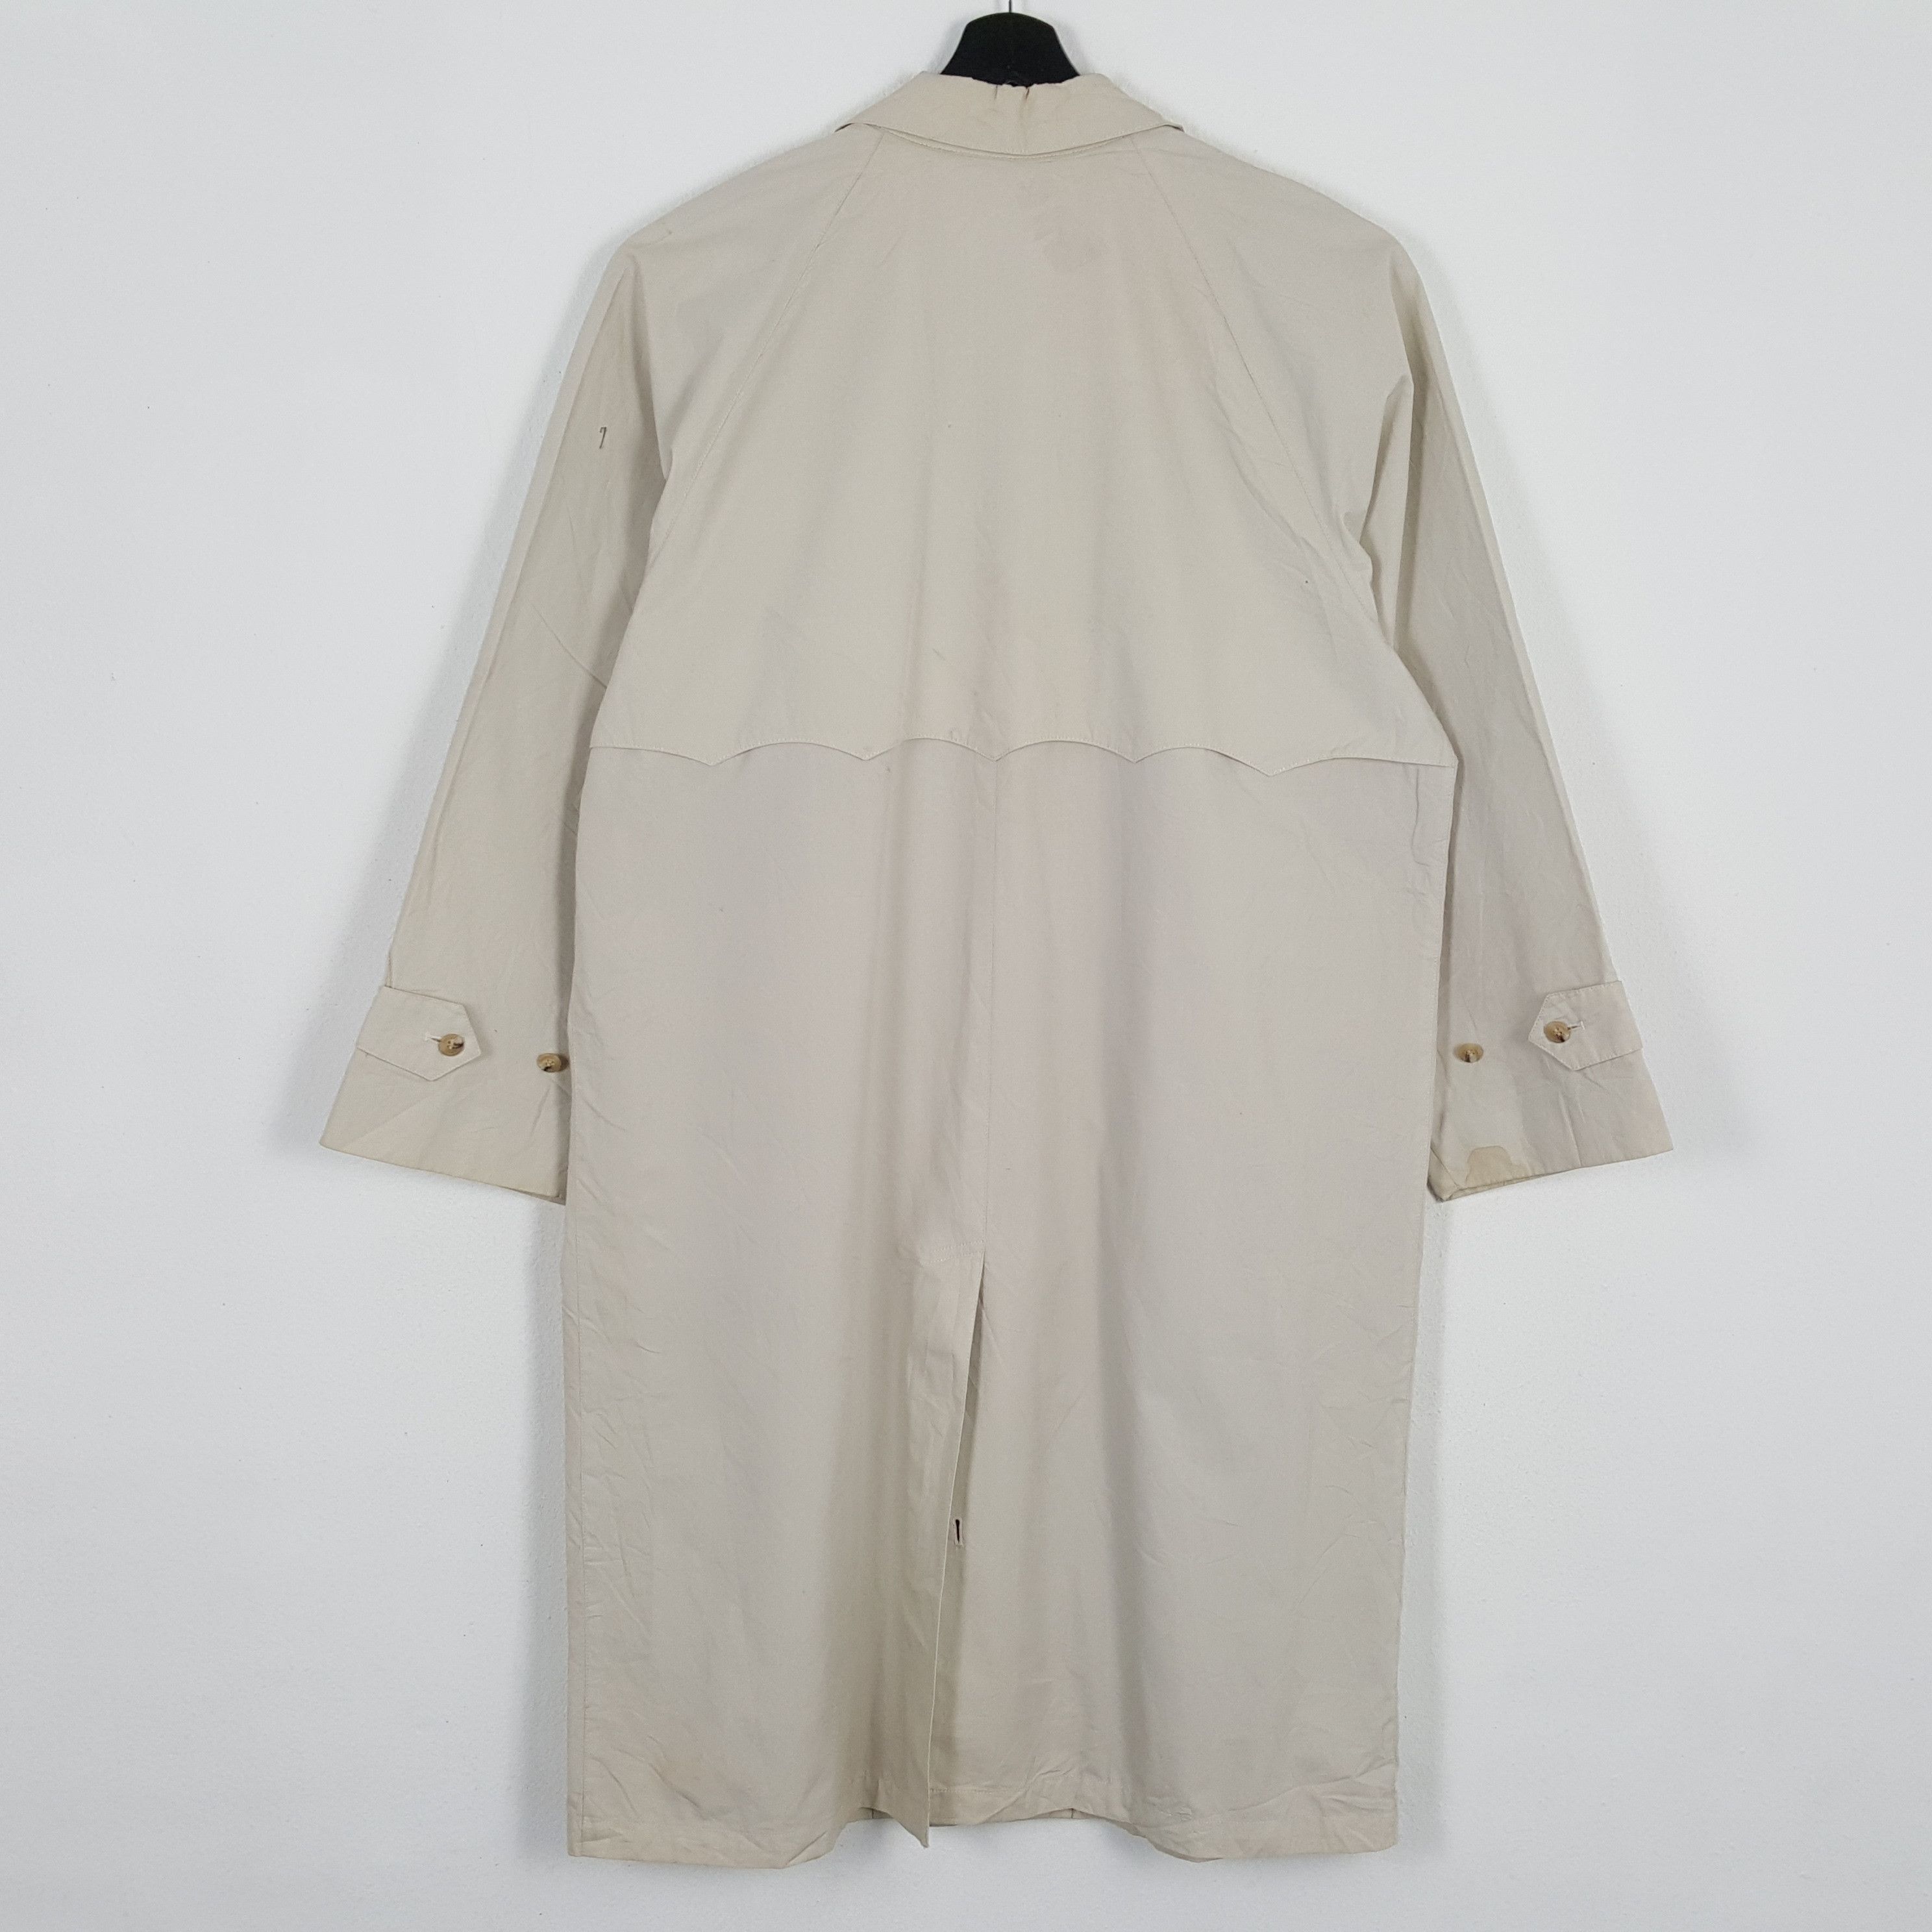 Vintage BARACUTA British Style Long Vintage Jacket Size US XL / EU 56 / 4 - 3 Thumbnail